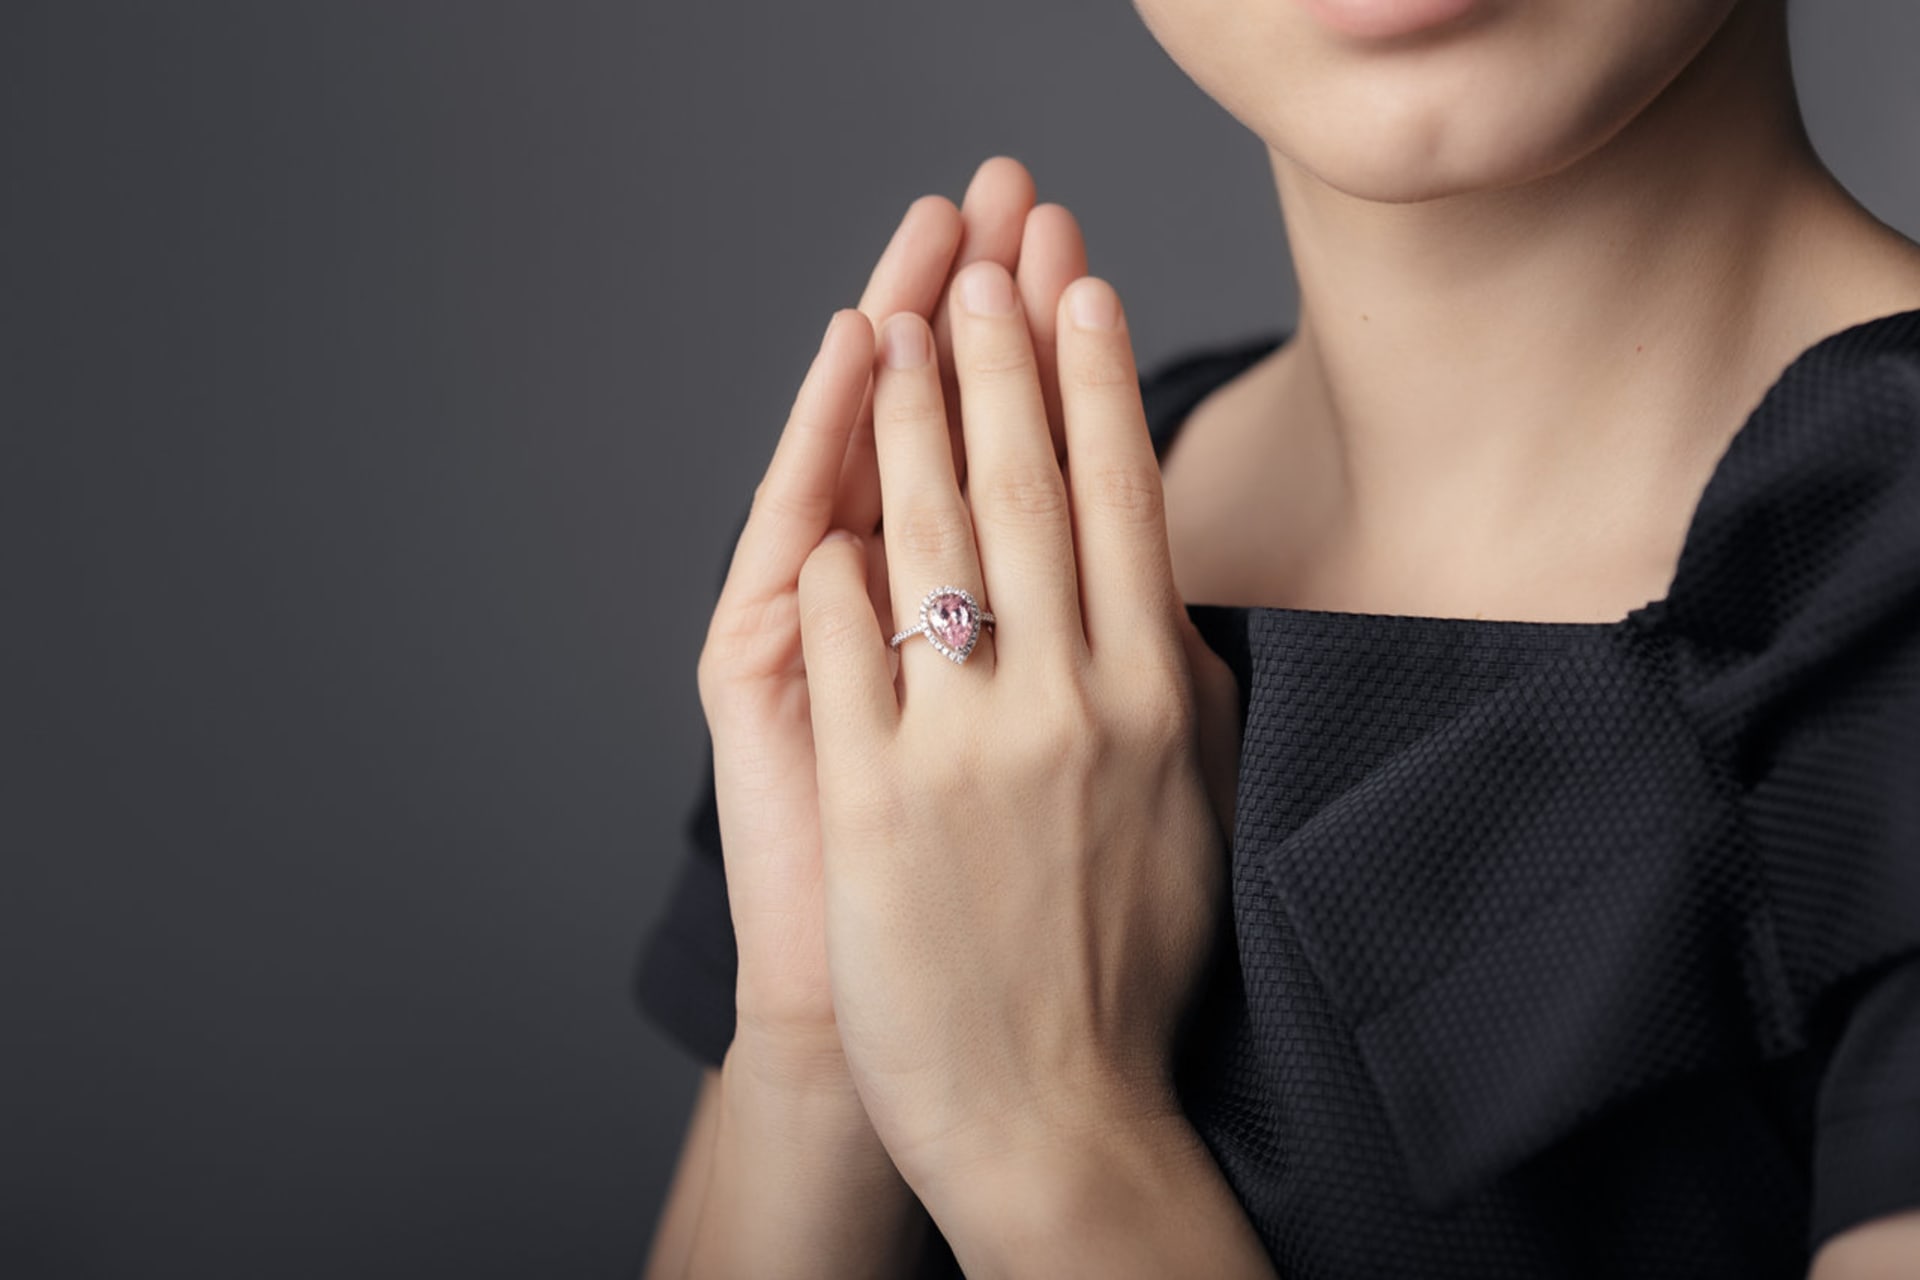 Ženy, které mají ukazováček přibližně stejně dlouhý jako prsteníček, mívají u mužů větší úspěch